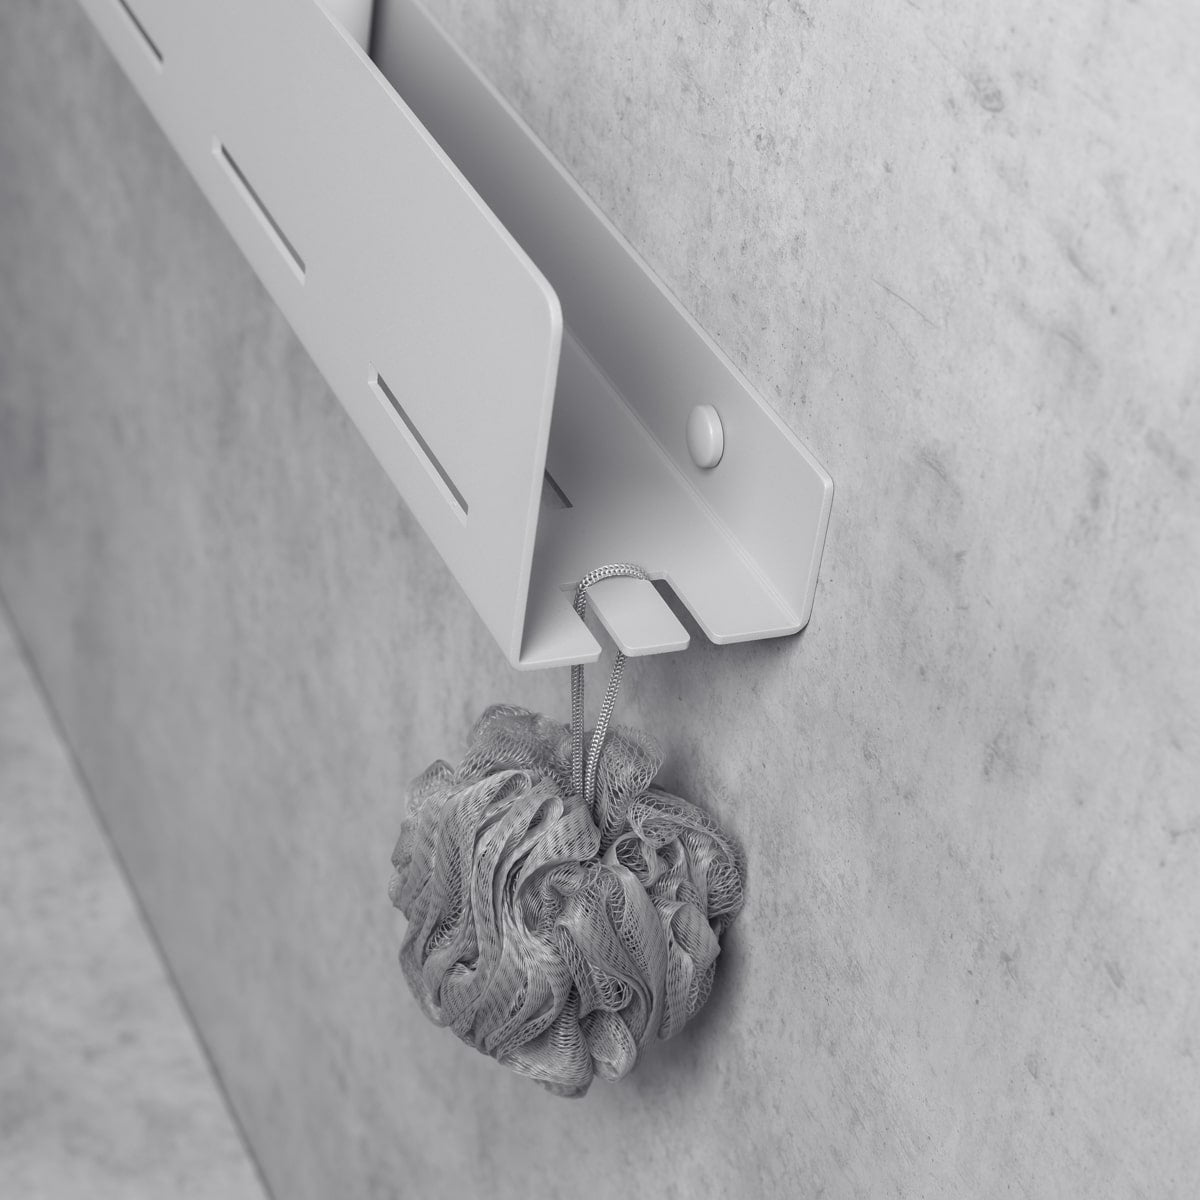 grey bathroom shelf-organizer wenca L